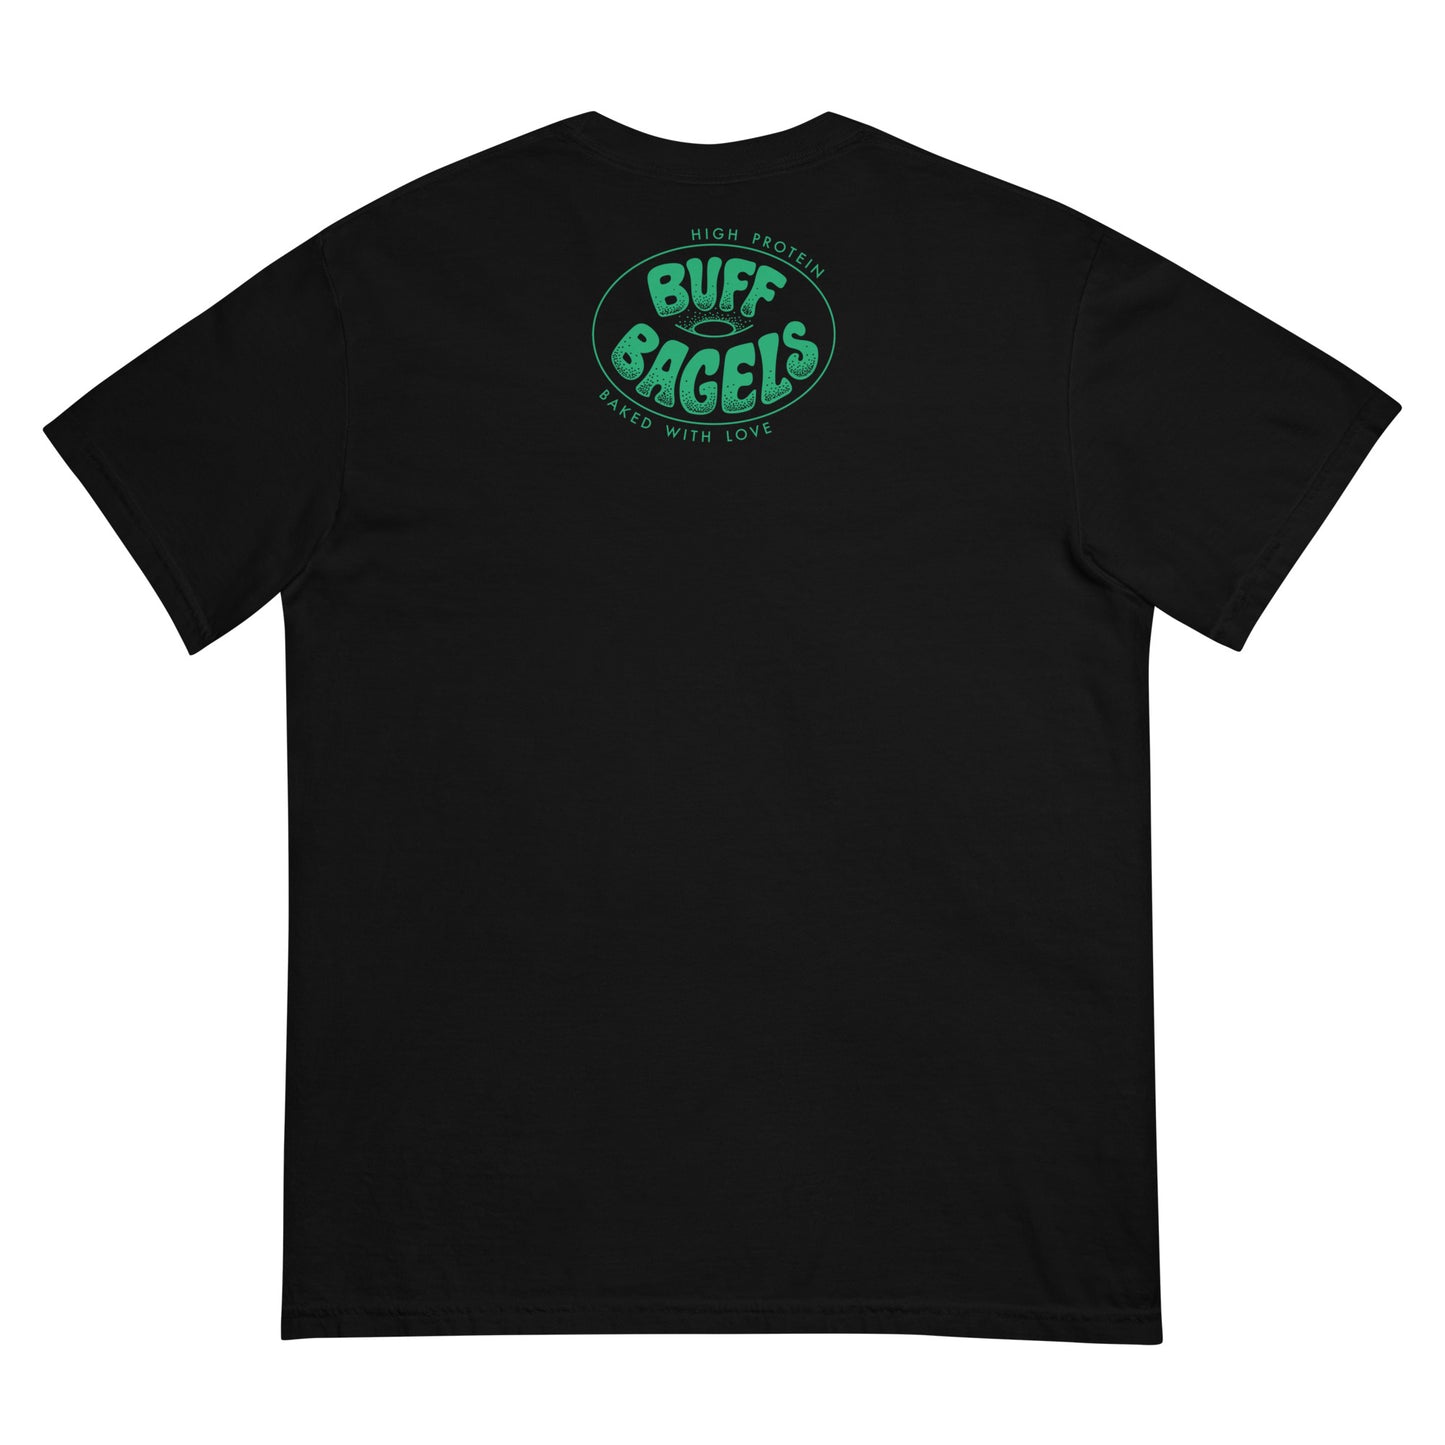 BUFF AF (green/purple) - Men’s garment-dyed heavyweight t-shirt